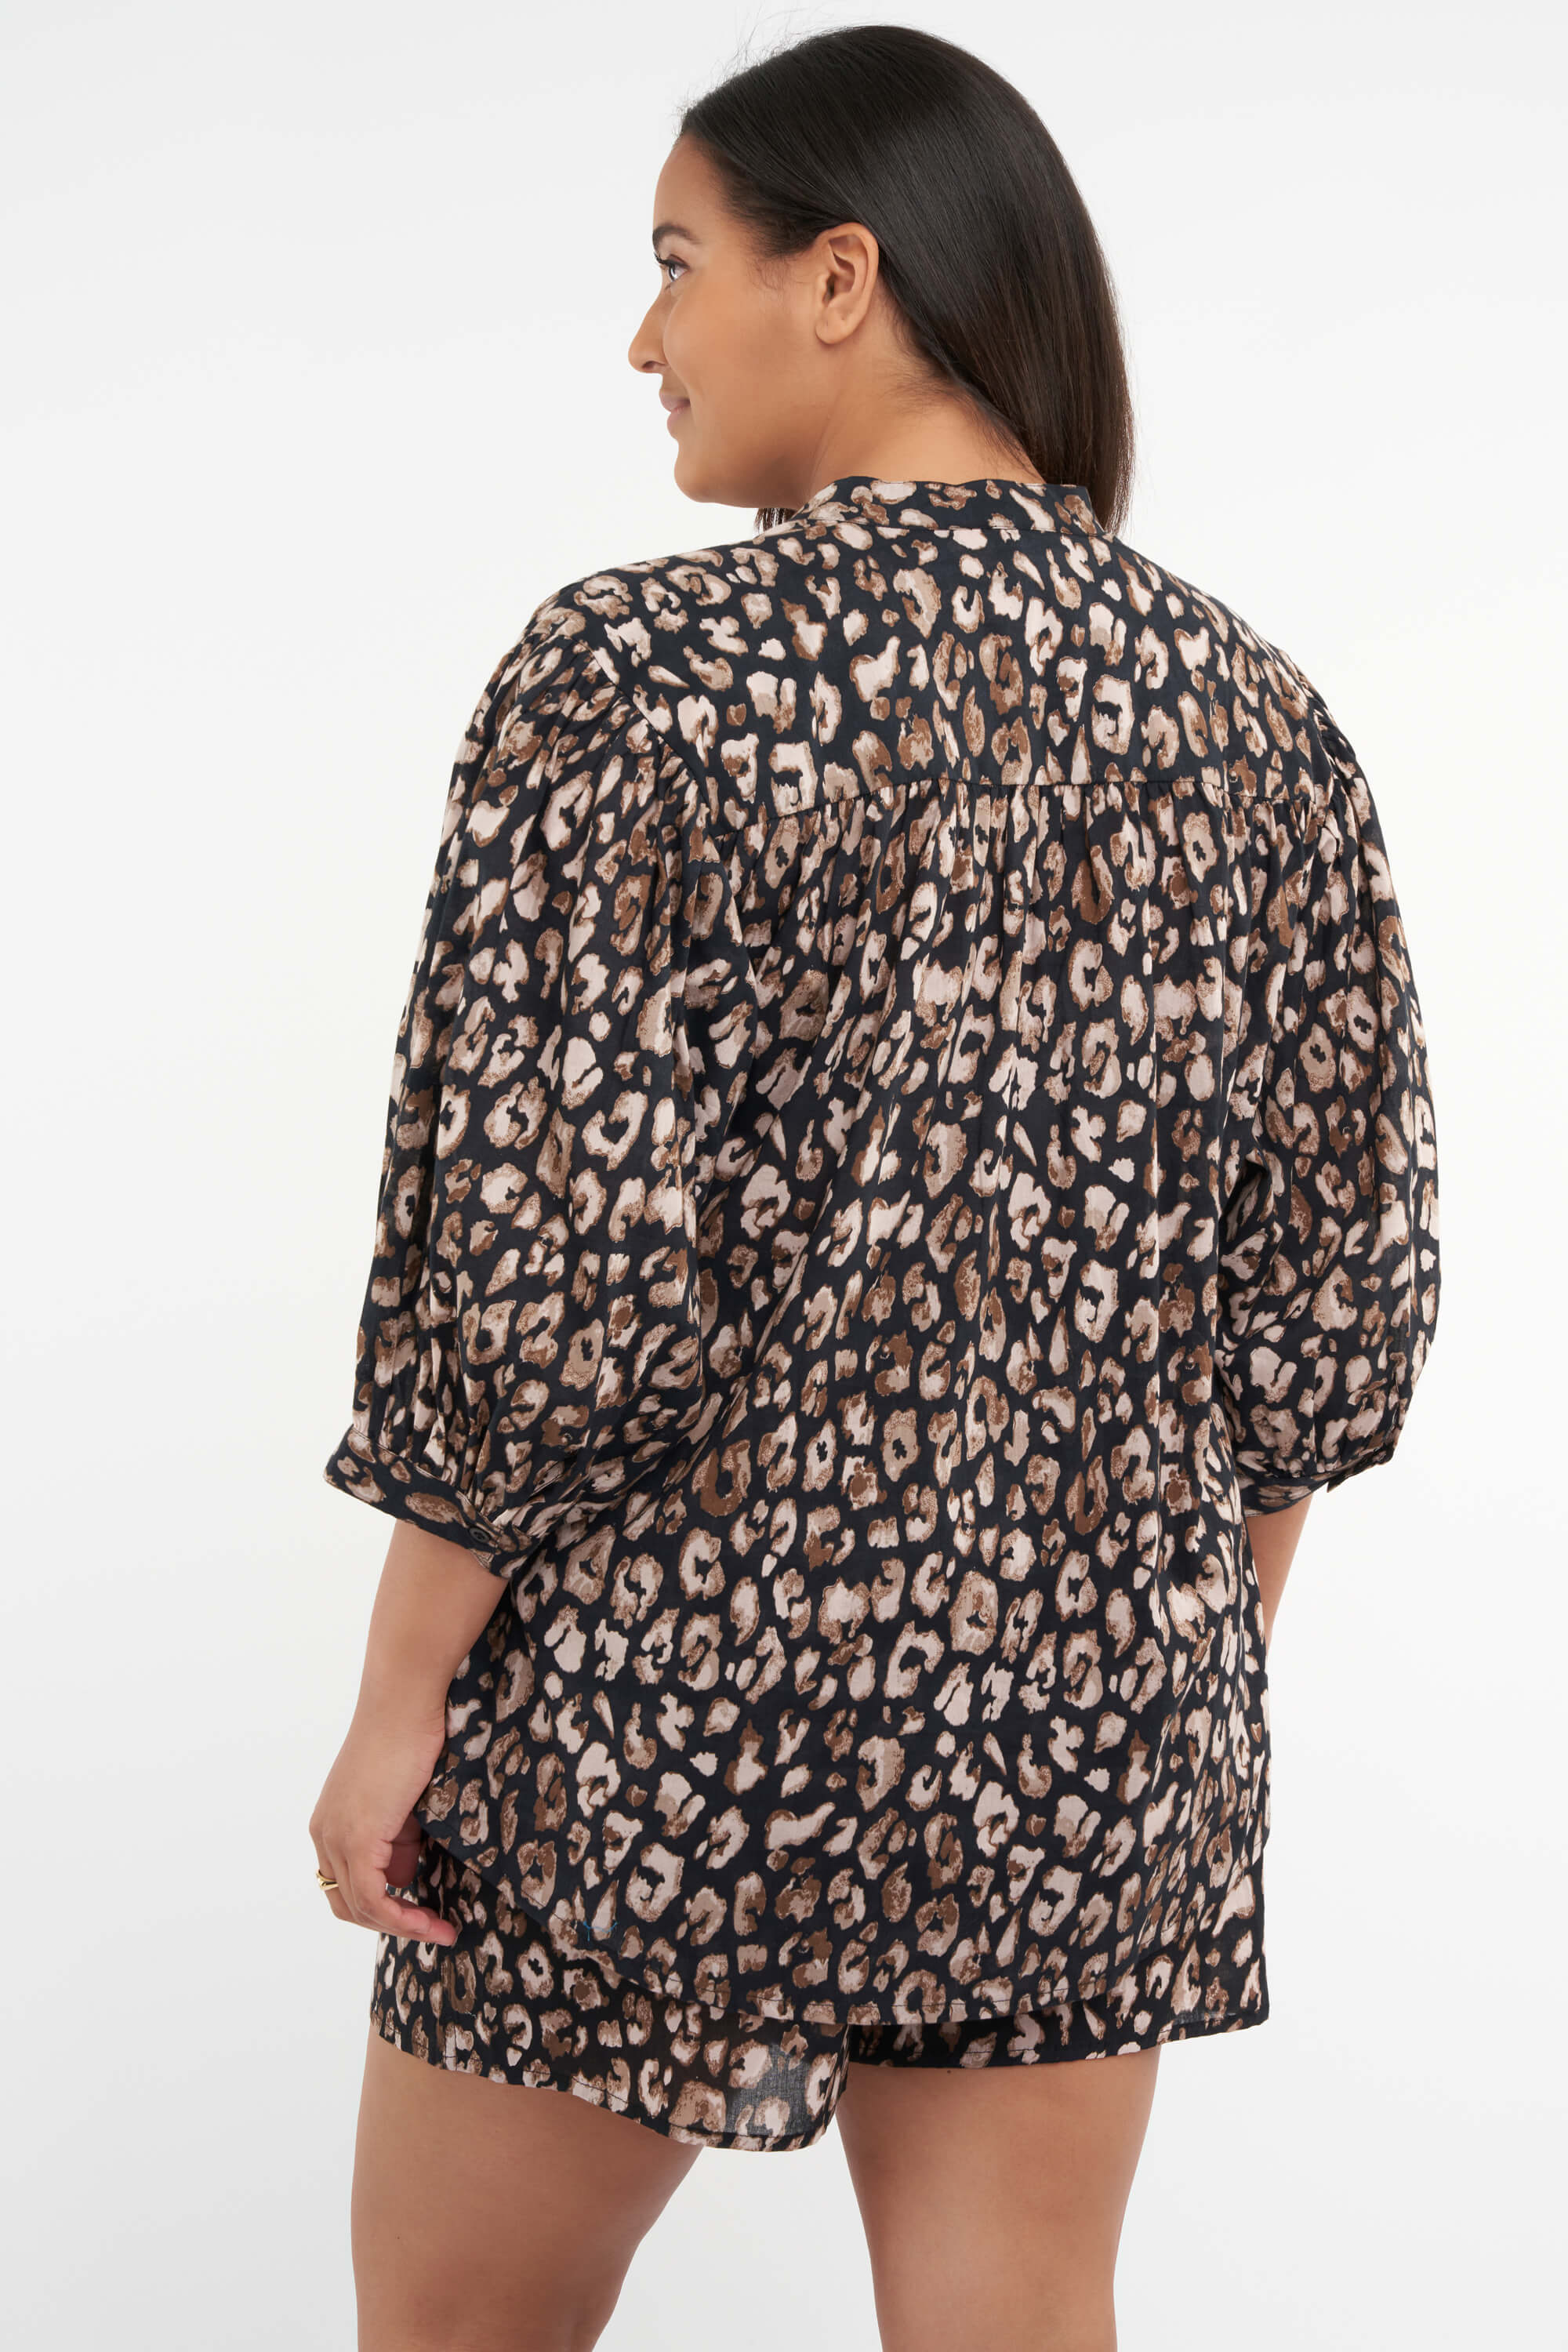 Blusa con estampado de leopardo image 3